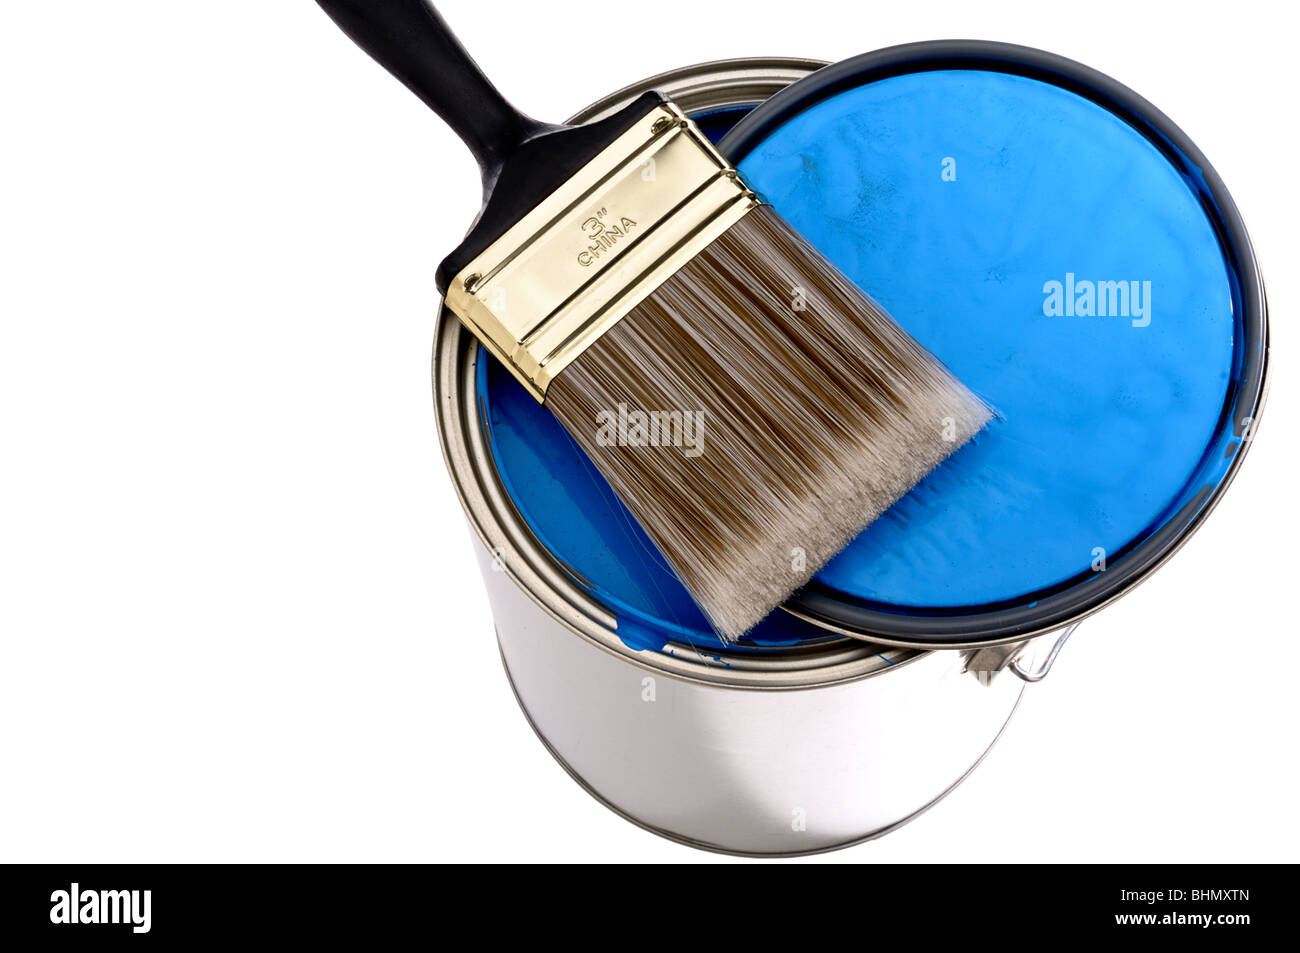 Spazzola di vernice e il coperchio sulla parte superiore di un barattolo di vernice blu Foto Stock